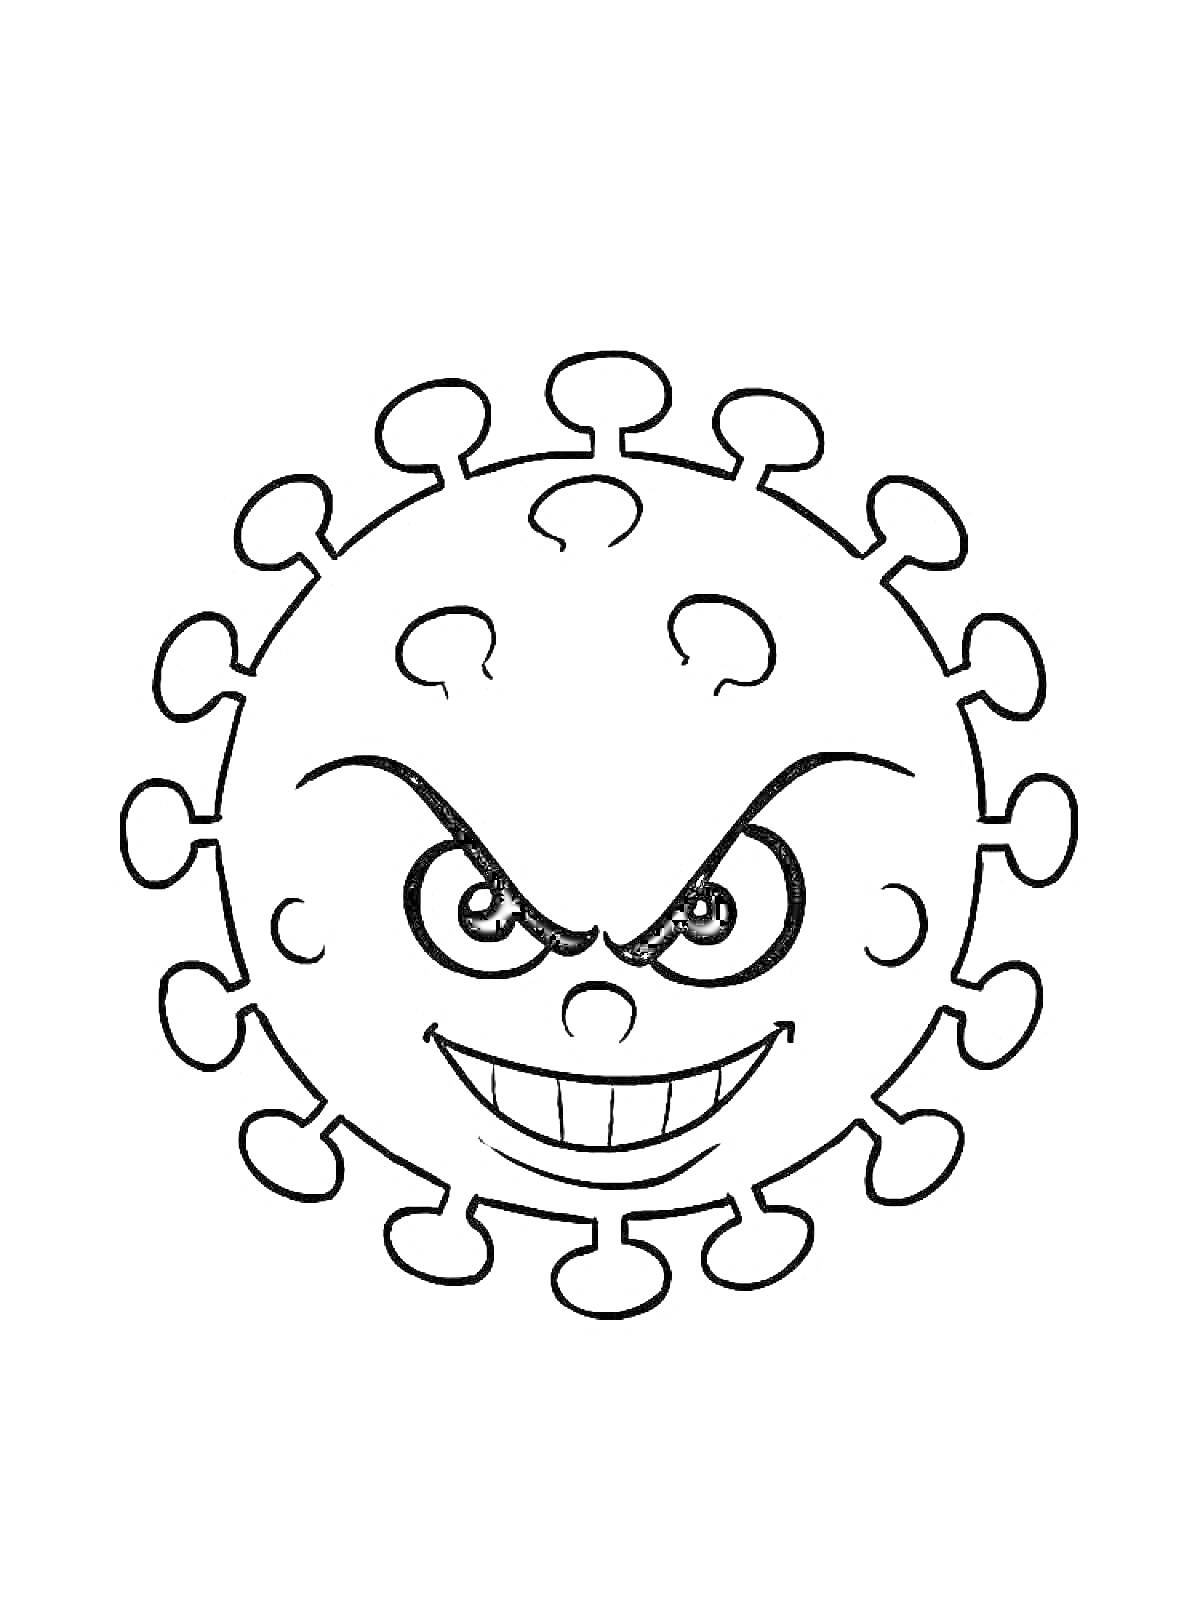 Раскраска Изображение коронавируса с сердитыми глазами и улыбкой